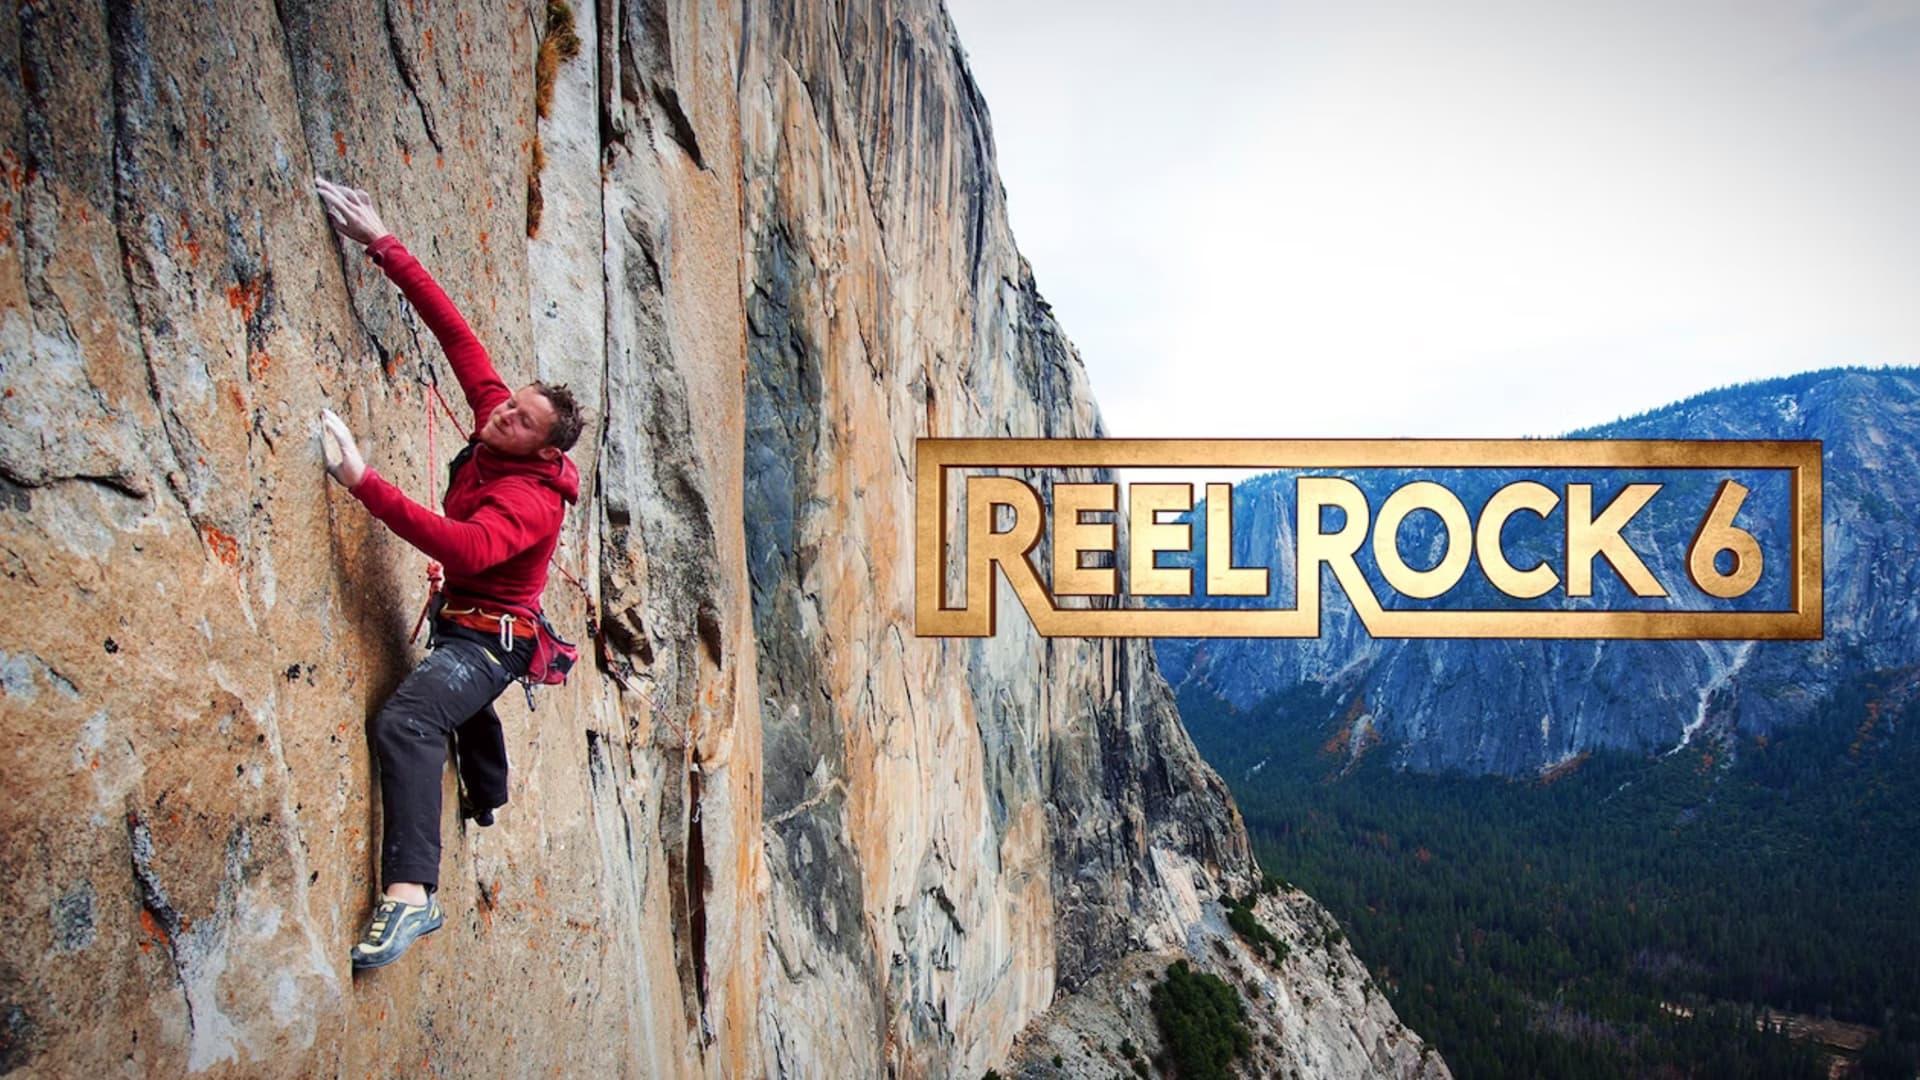 Reel Rock 6 backdrop